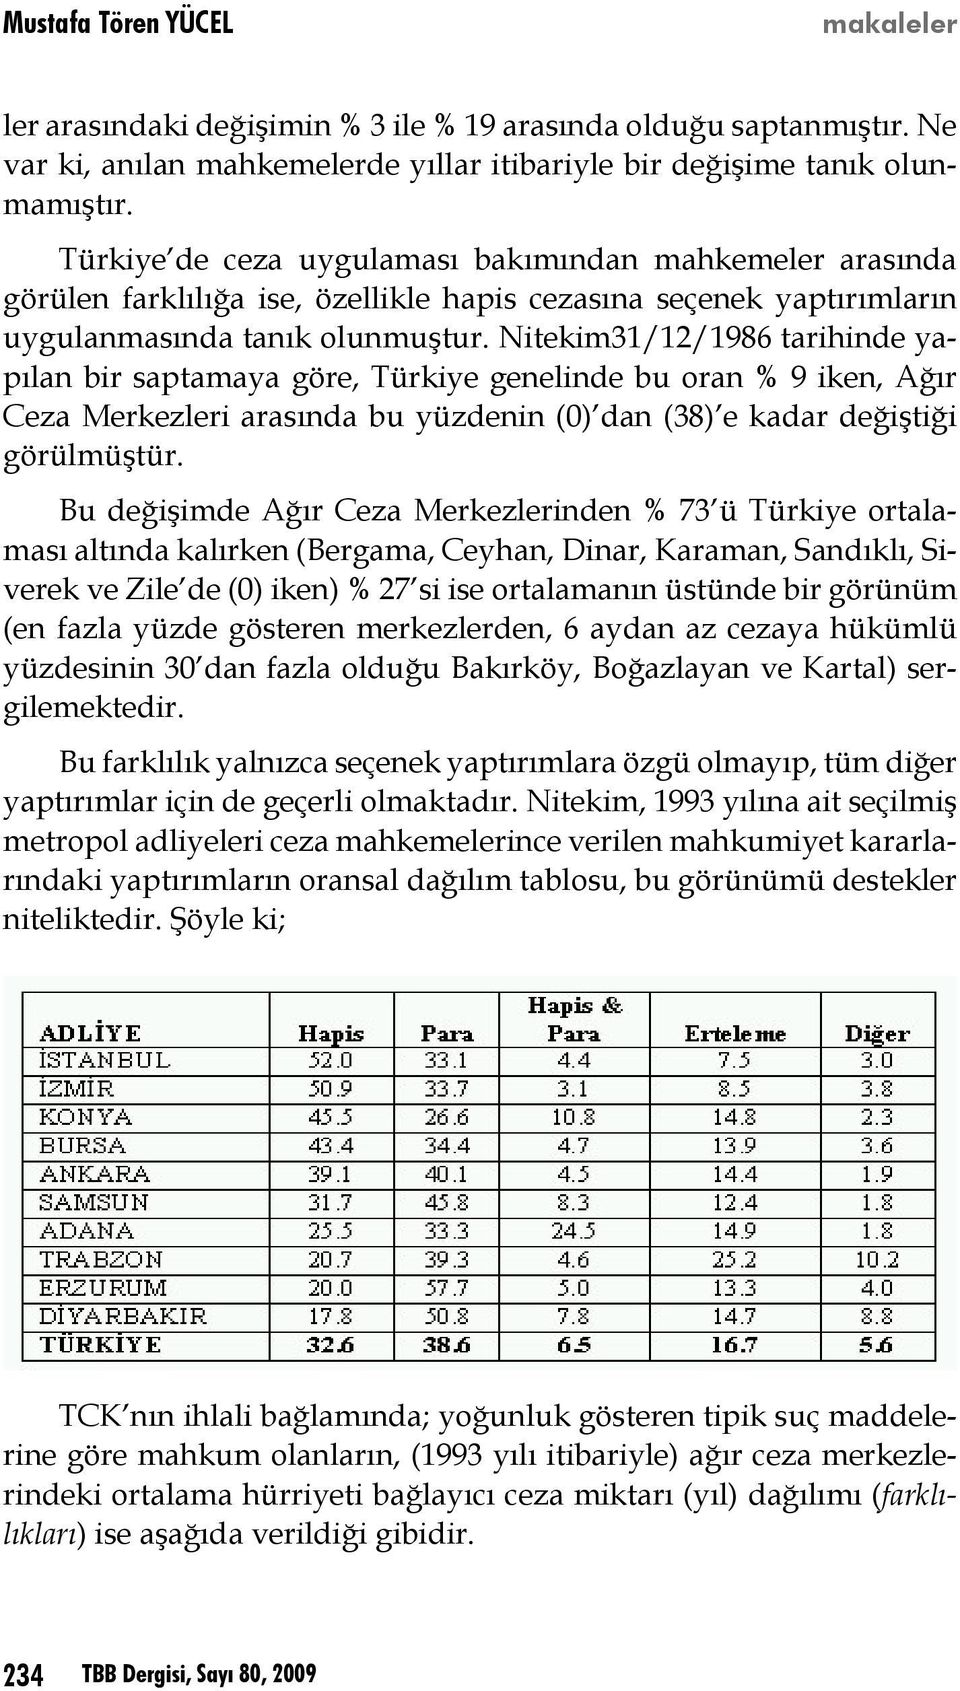 Nitekim31/12/1986 tarihinde yapılan bir saptamaya göre, Türkiye genelinde bu oran % 9 iken, Ağır Ceza Merkezleri arasında bu yüzdenin (0) dan (38) e kadar değiştiği görülmüştür.